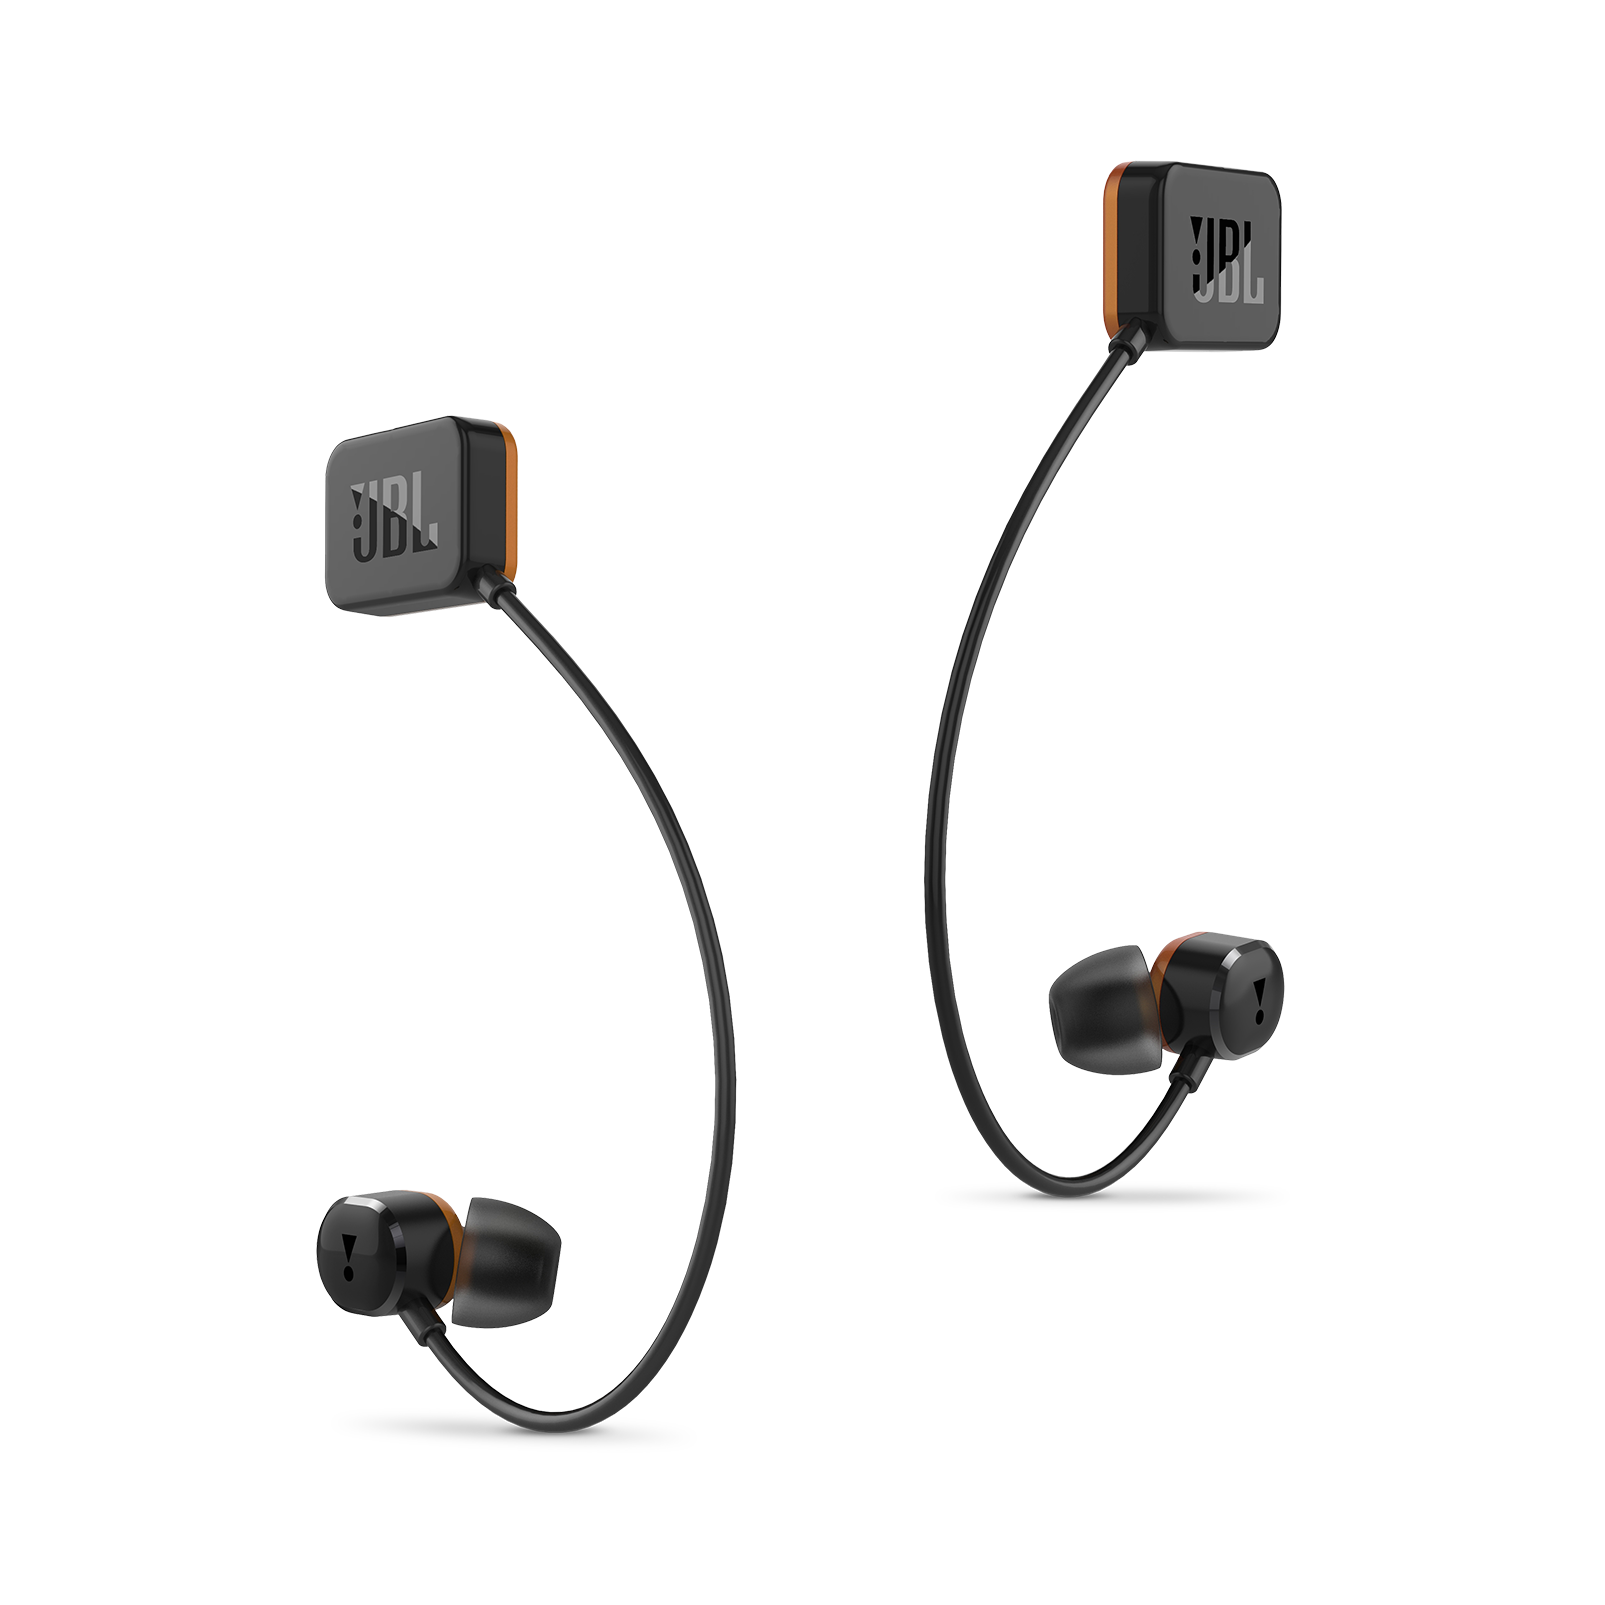 OR100 In-ear headphones designed Oculus | Superior Sound